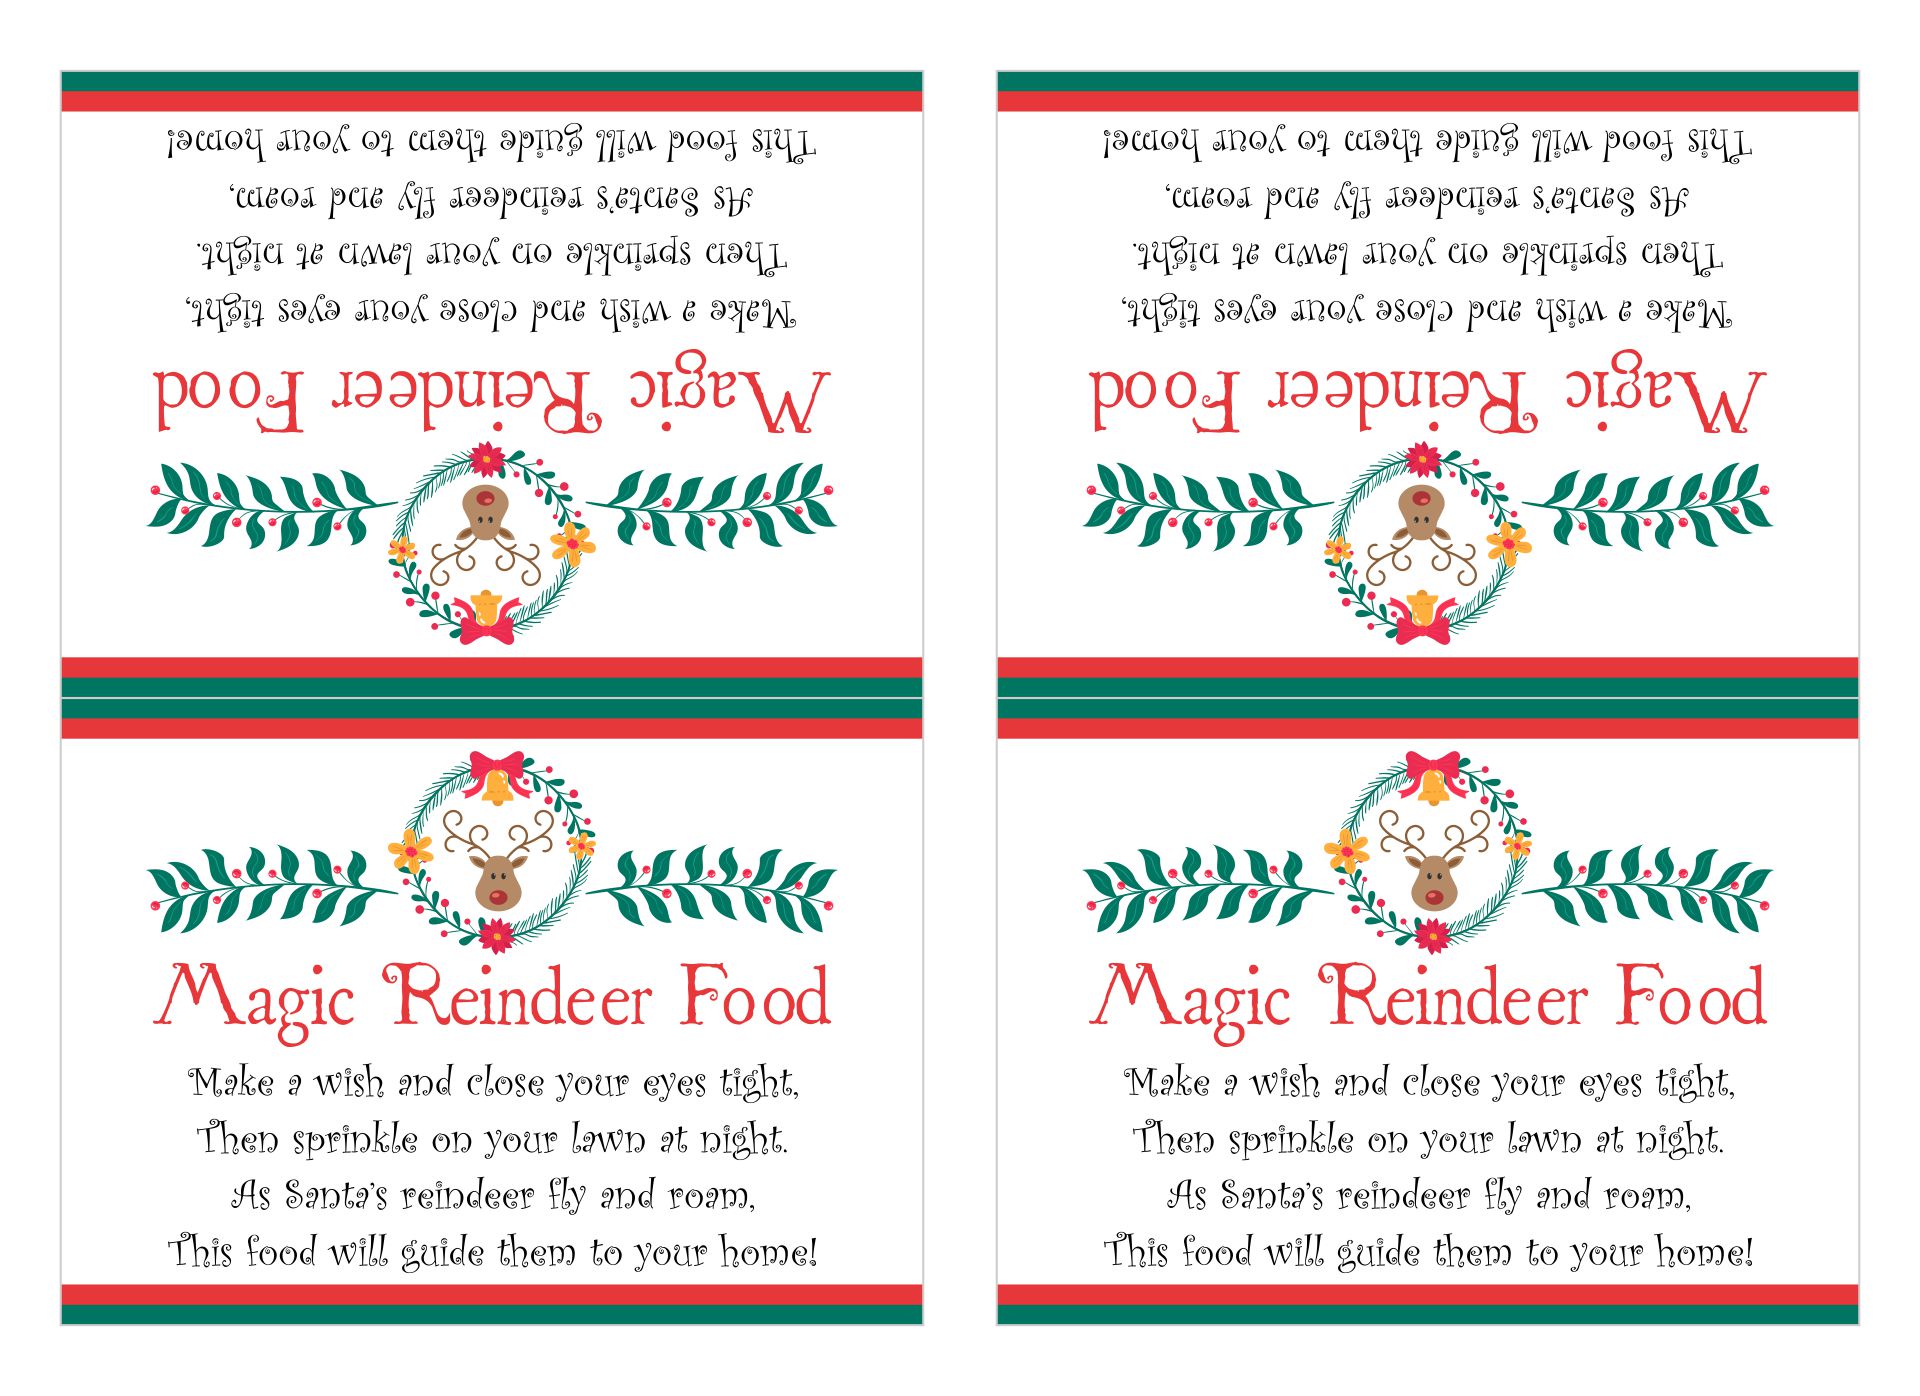 Reindeer Food Poem Labels - 11 Free PDF Printables | Printablee